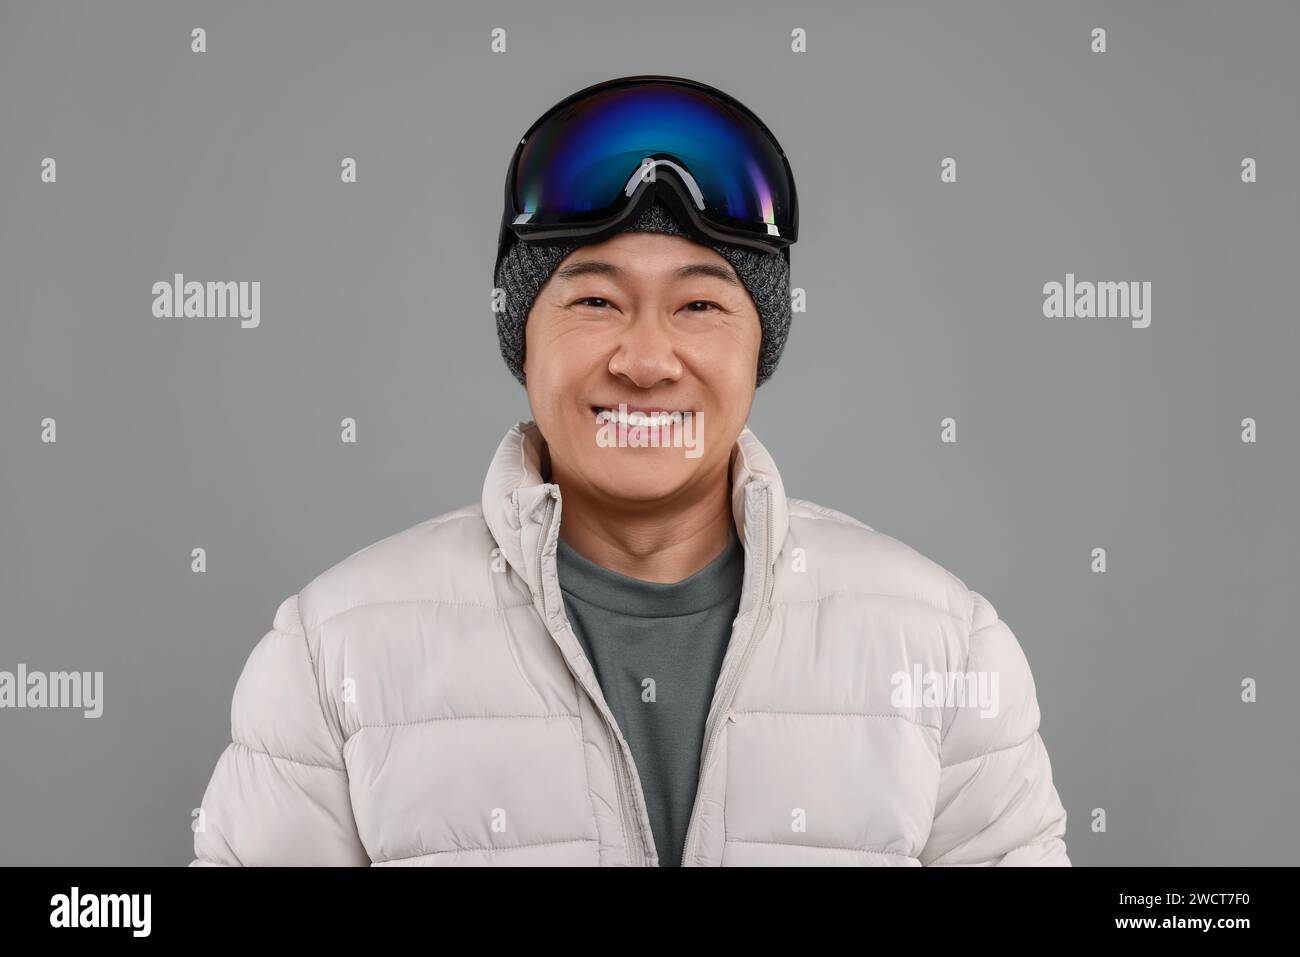 Deportes de invierno. Hombre feliz con gafas de esquí sobre fondo gris Foto de stock